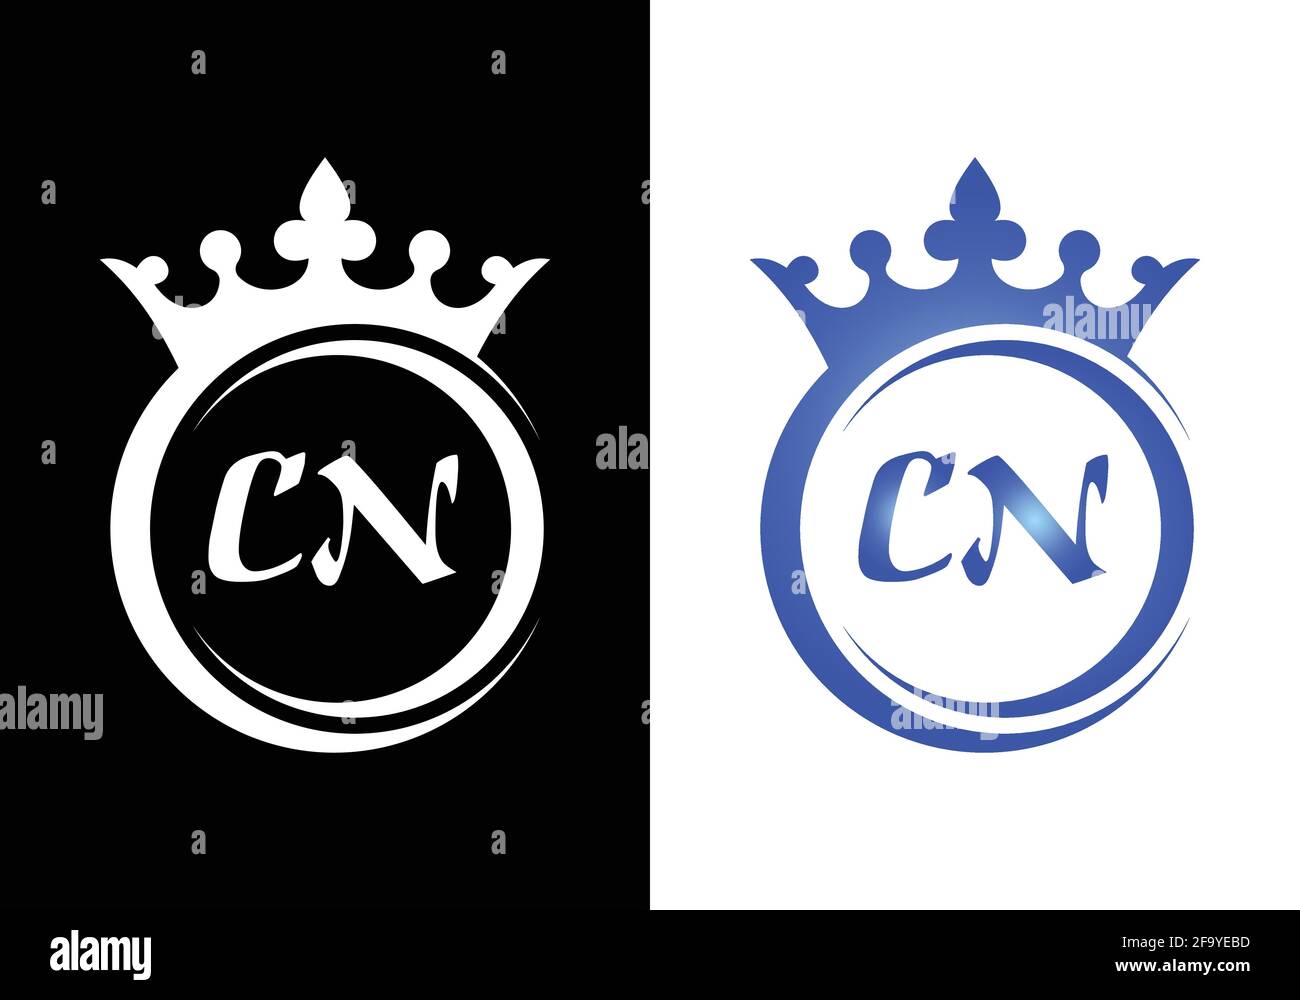 Lettera della corona del re C N per il disegno dell'icona del logo dell'azienda. Illustrazione Vettoriale